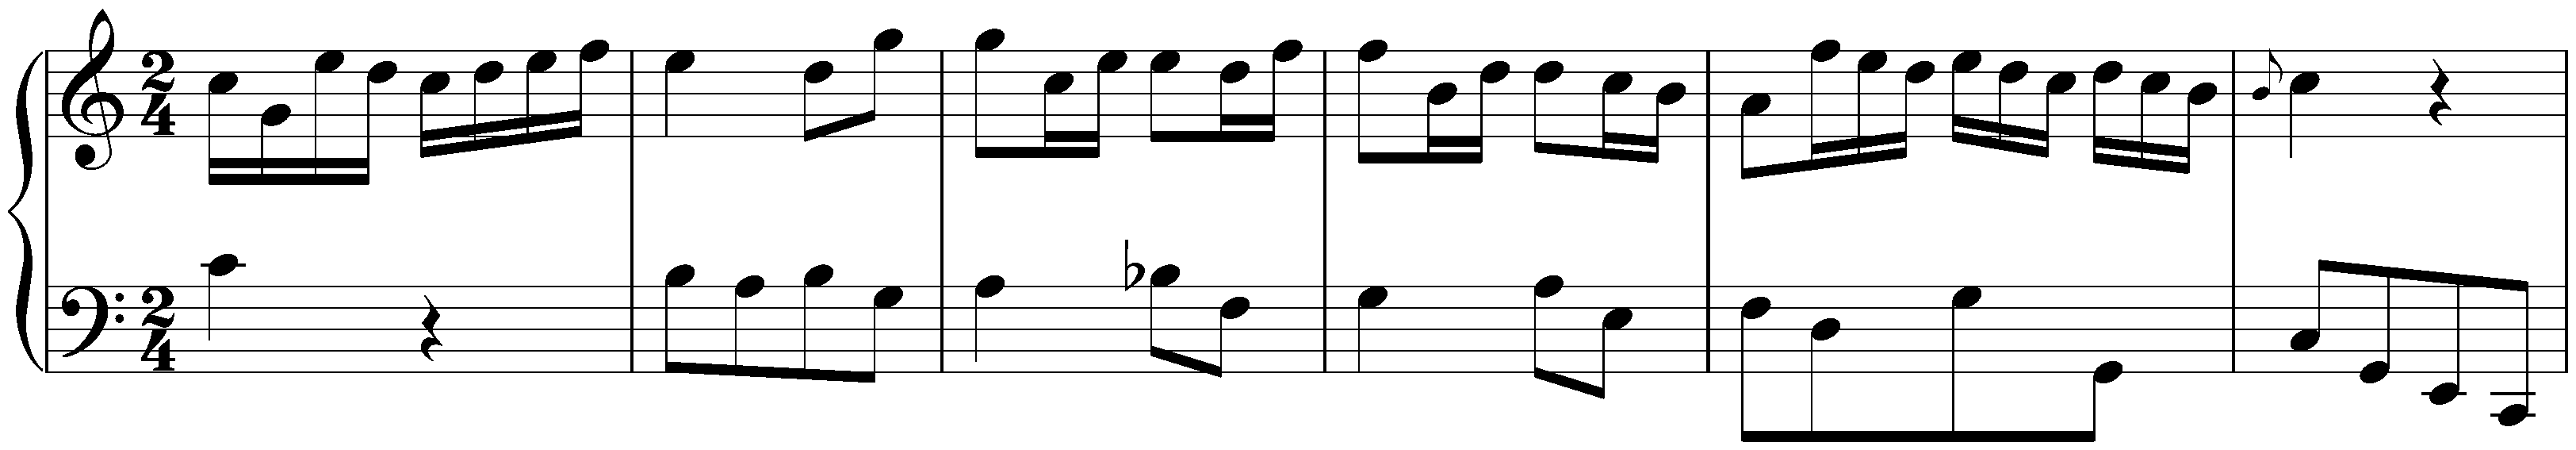 Sonatas found in Zaragoza; 2. C major